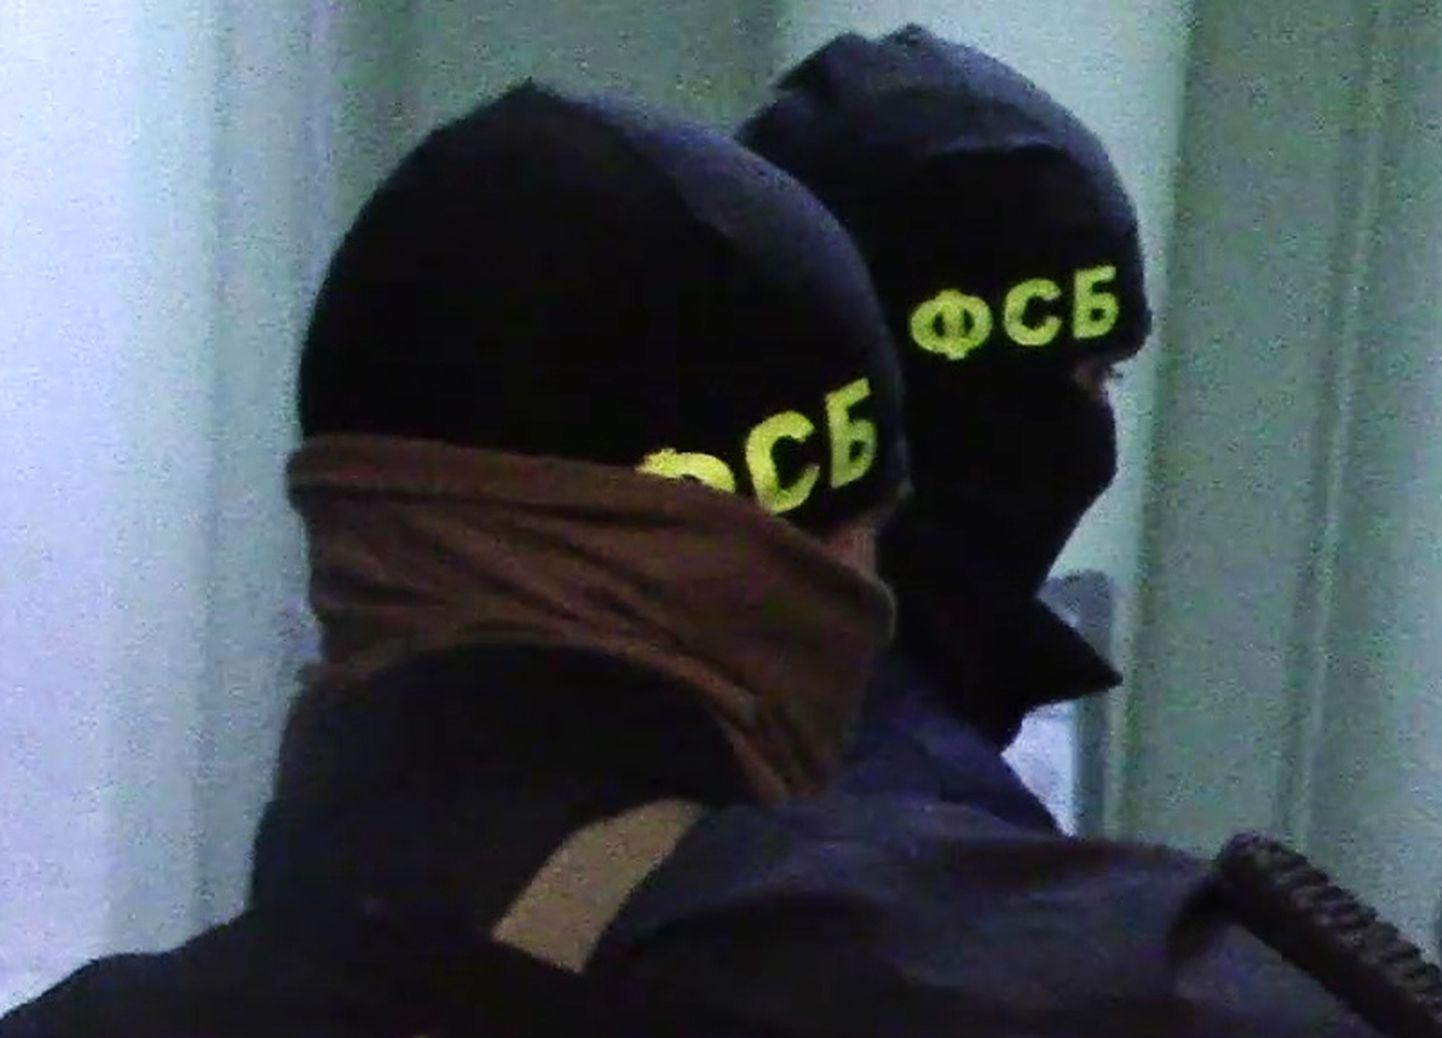 FSB agendid.